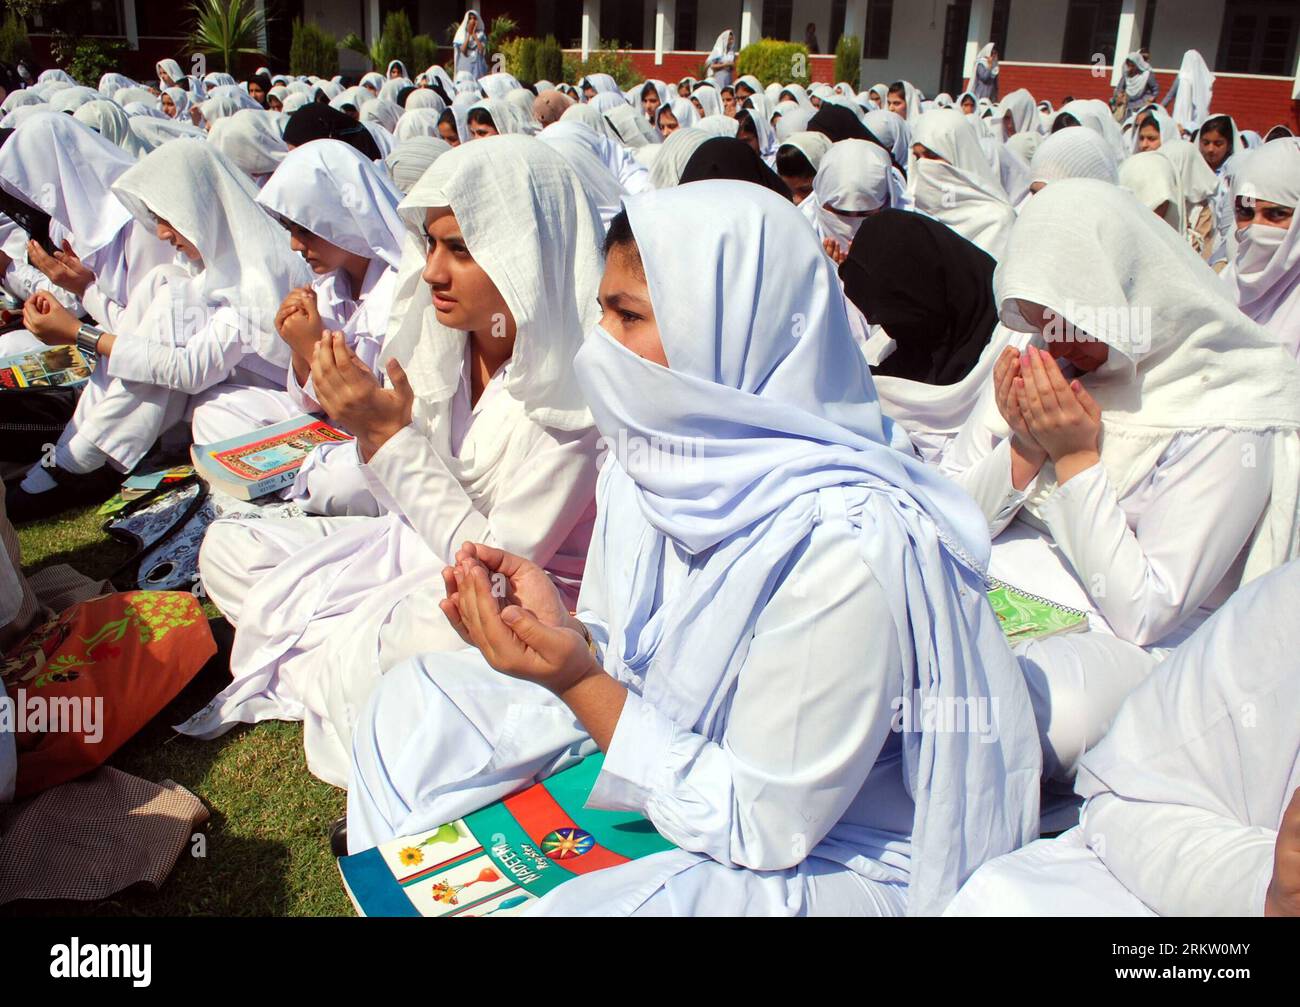 Bildnummer : 58583710 Datum : 12.10.2012 Copyright : imago/Xinhua (121012) -- PESAHWAR, 12 oct. 2012 (Xinhua) -- des étudiants pakistanais prient pour la récupération de Malala Yousafzai, militante des droits des enfants de 14 ans, qui a reçu une balle dans la tête lors d'une tentative d'assassinat des talibans, à Peshawar, au nord-ouest du Pakistan, le 12 octobre 2012. Les Pakistanais dans les mosquées à travers le pays ont prié vendredi pour le rétablissement de Malala, les médecins ont déclaré que les deux prochains jours étaient critiques. (Xinhua/Umar Qayyum) PAKISTAN-PESAHWAR-CHILDREN-ACTIVIST-PRAY PUBLICATIONxNOTxINxCHN Politik Gesellschaft Glaube religion Gebet Aktivistin Kinderrechte Banque D'Images